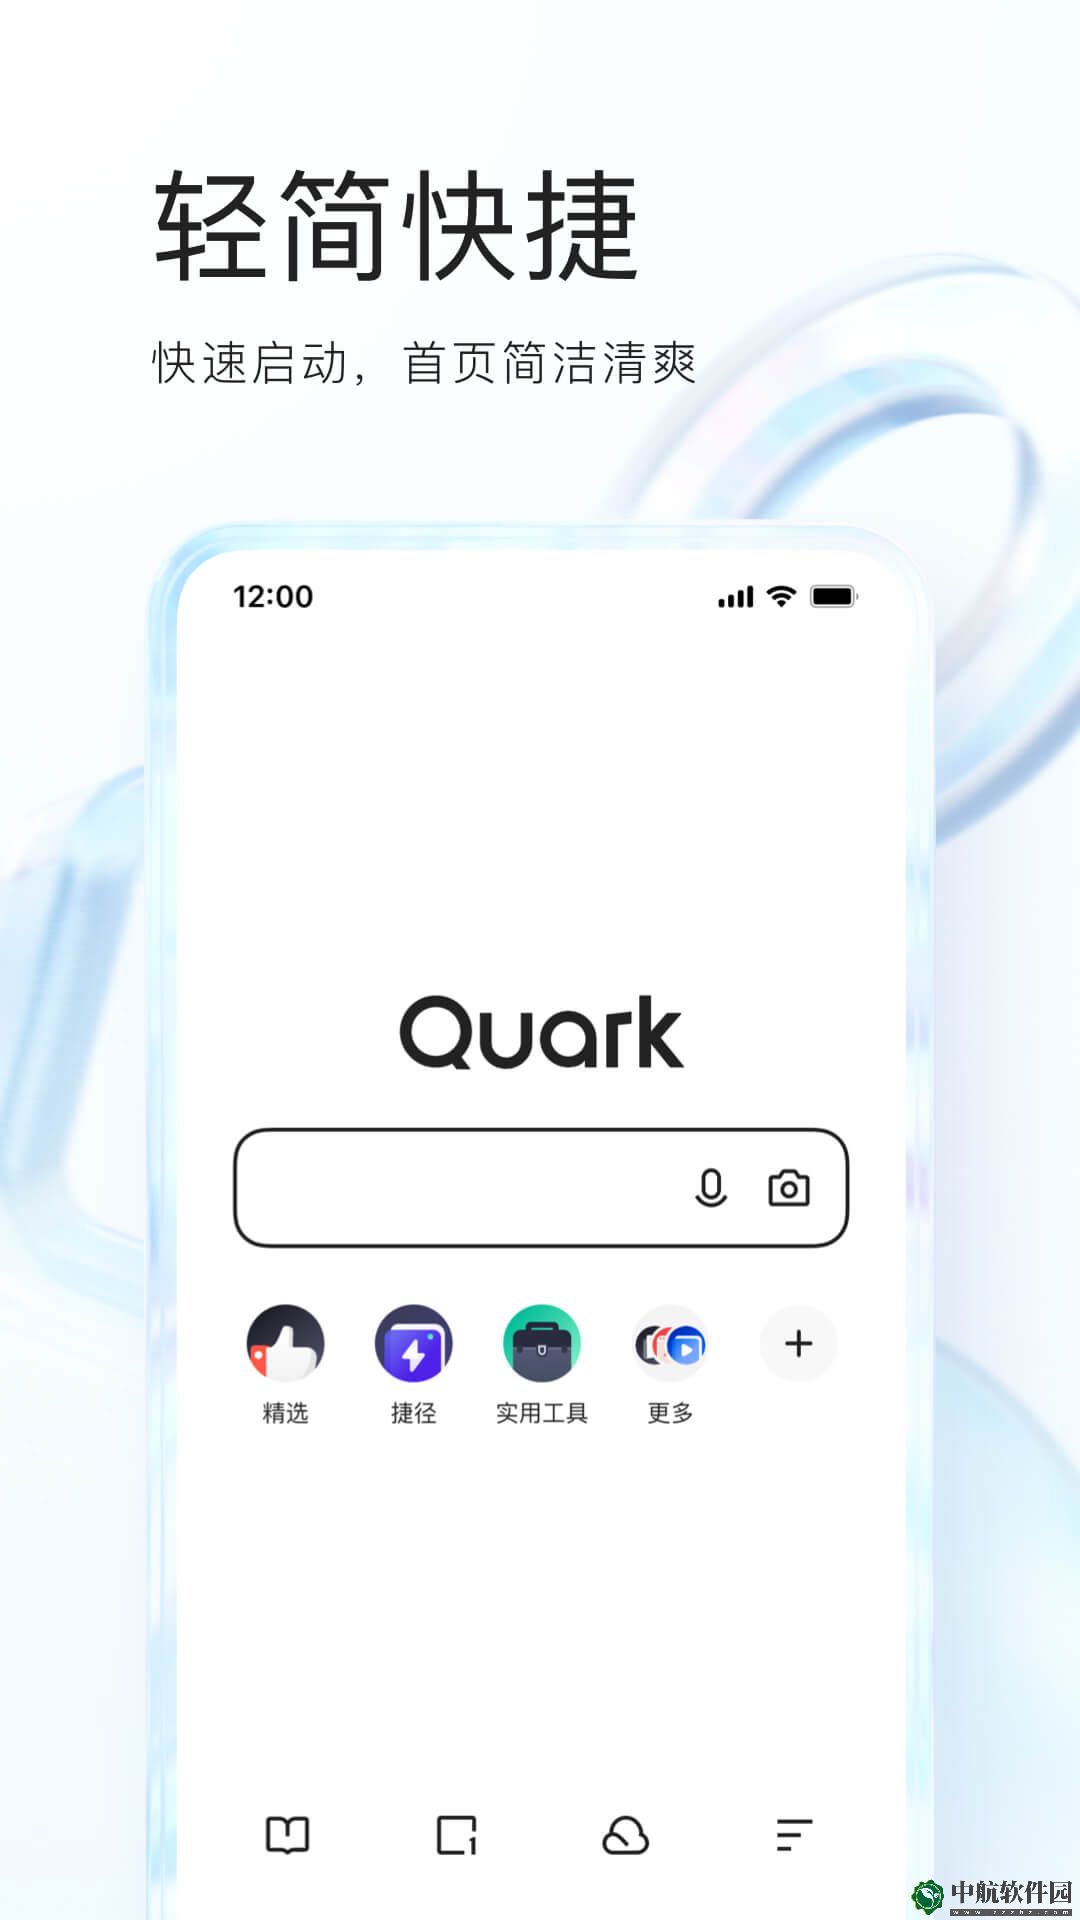 夸克app下载最新版免费下载